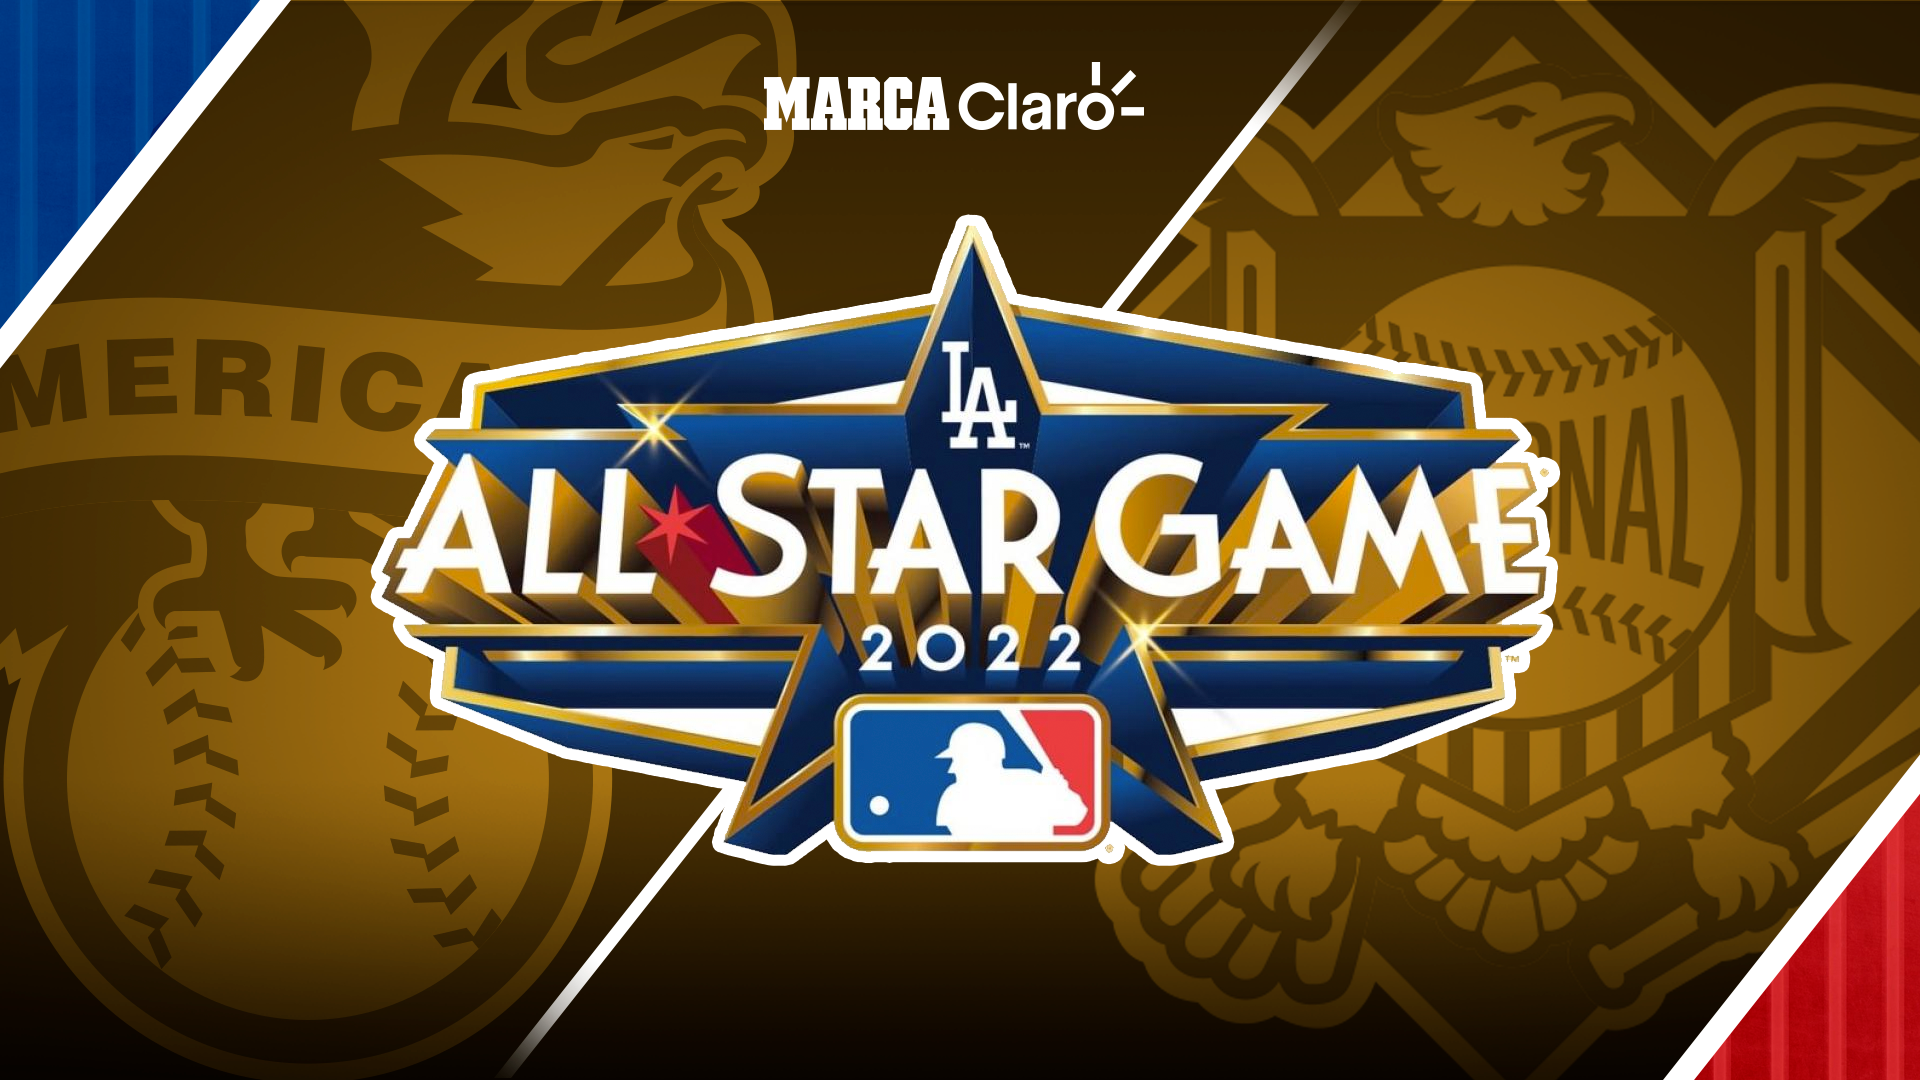 All Star Game 2022 MLB score: en vivo y en directo online: resultado al momento.